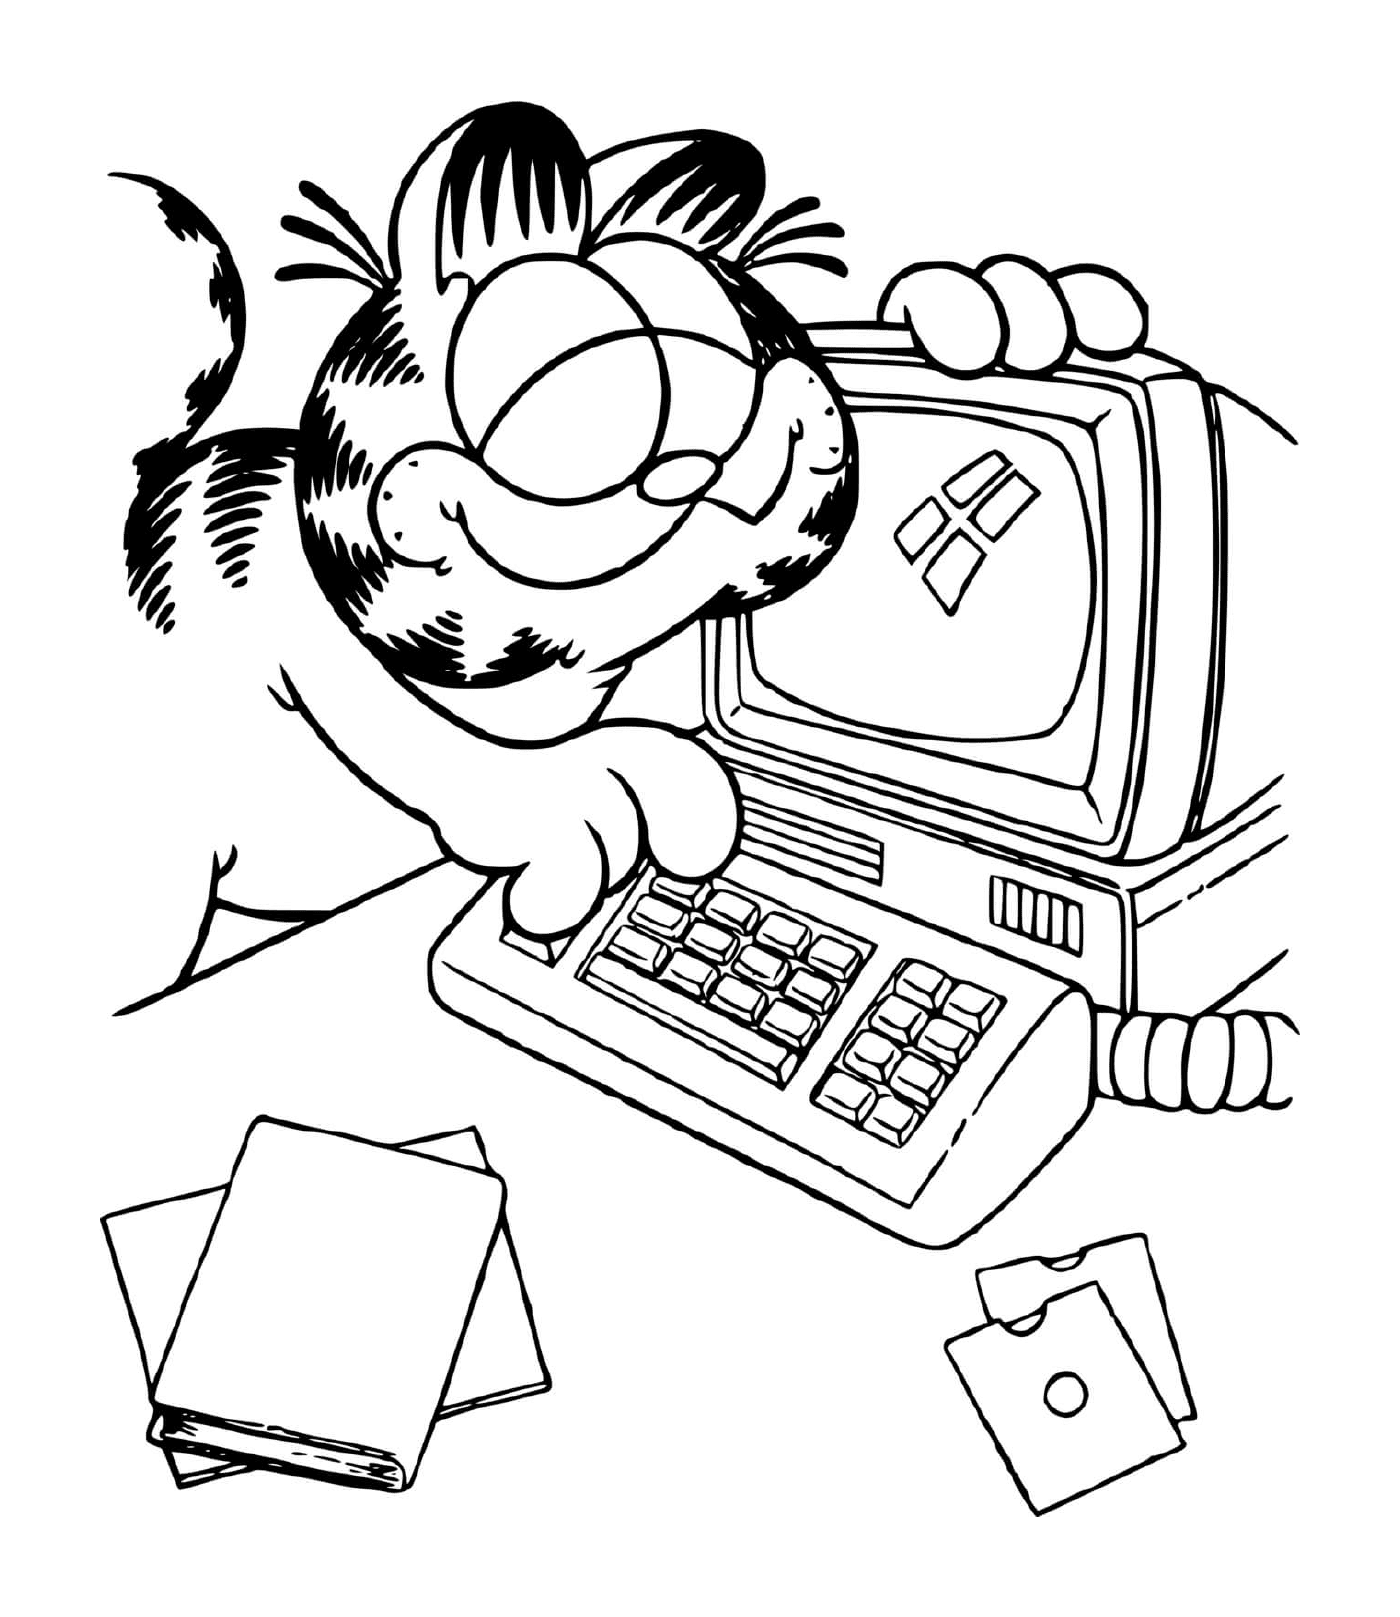  Garfield usa um computador 